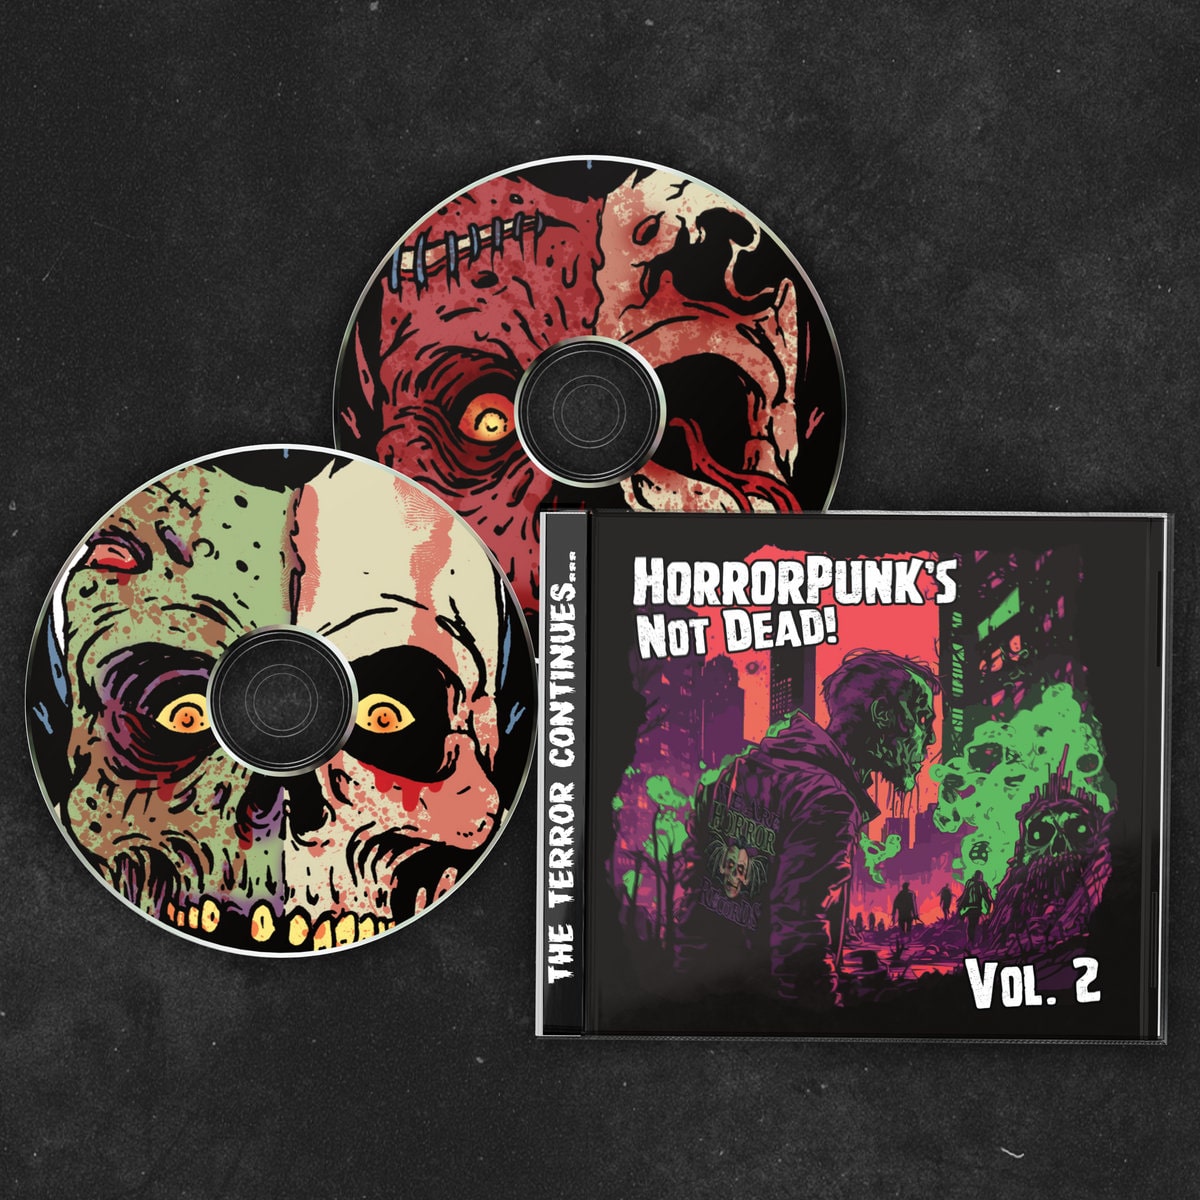 Horrorpunk's Not Dead! Vol. 2 